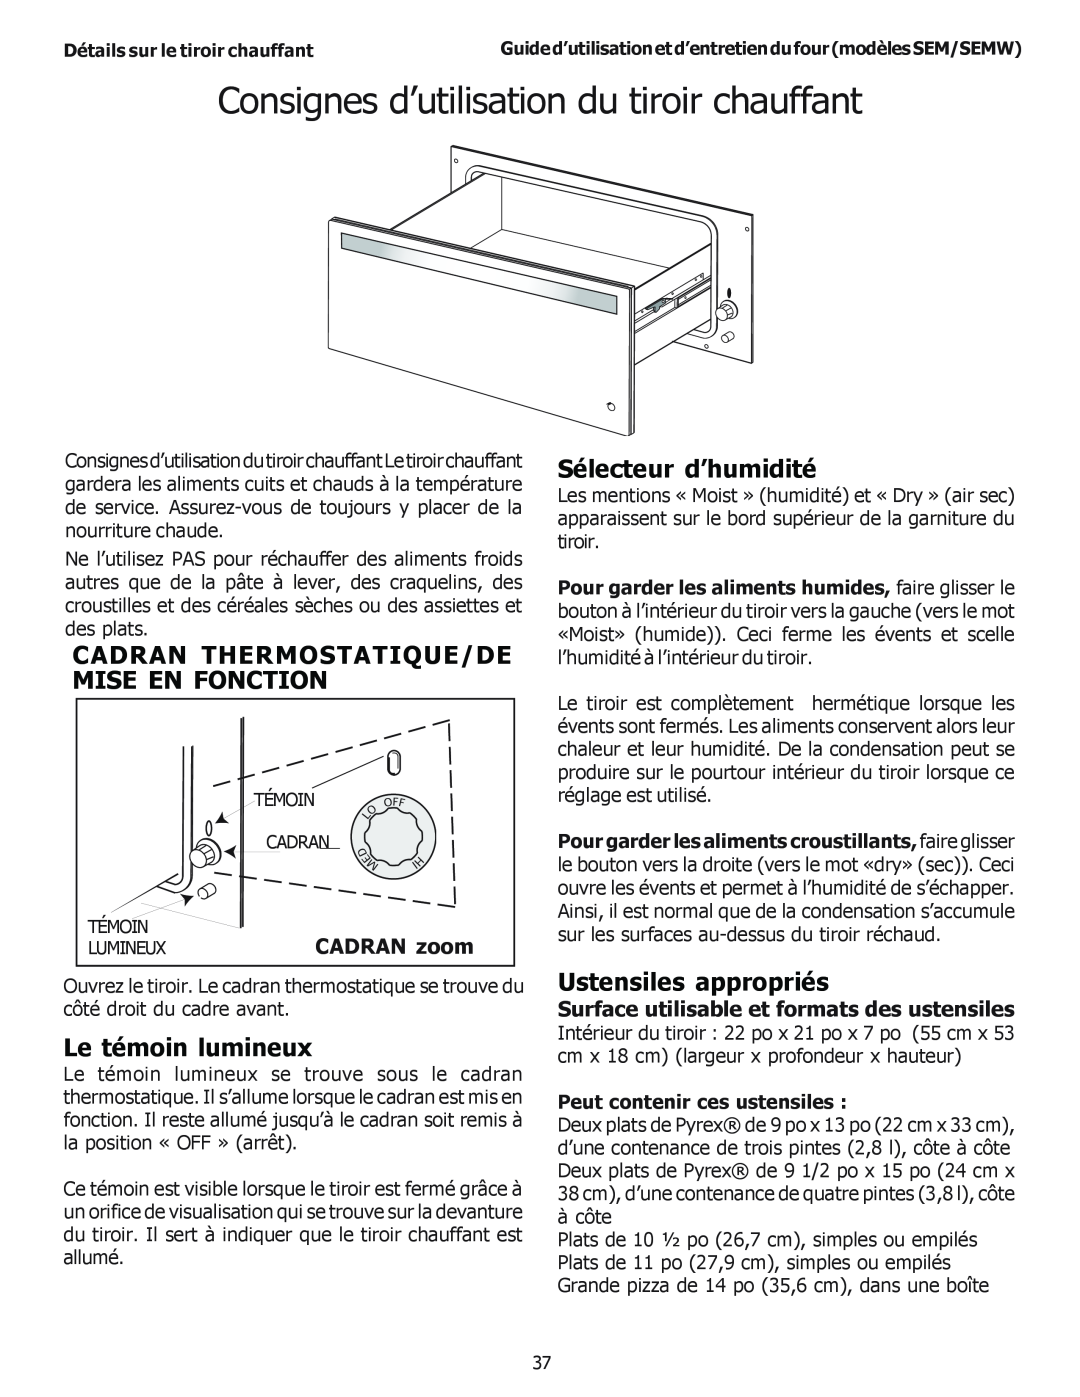 Thermador SEMW272 Consignes d’utilisation du tiroir chauffant, Cadran Thermostatique/De Mise En Fonction, CADRAN zoom 